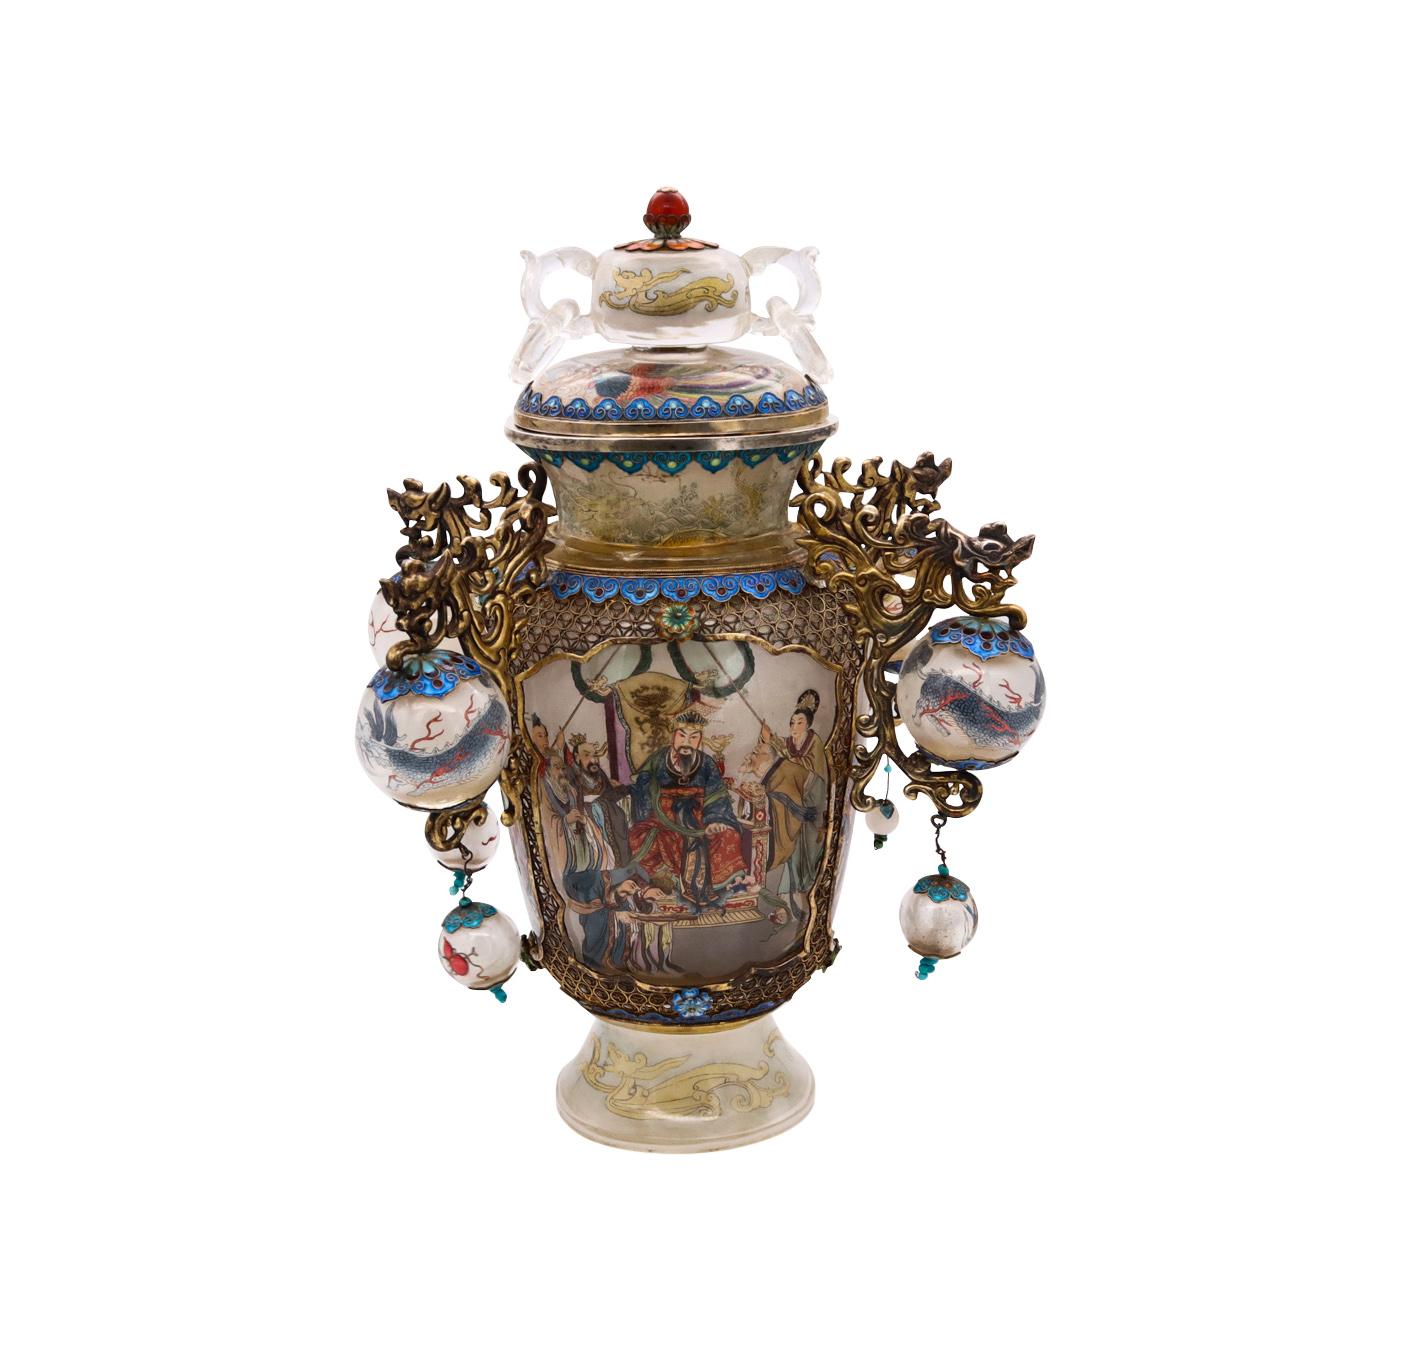 Eine beeindruckende, innen bemalte China-Vase aus Bergkristall.

Wunderschönes und einzigartiges Kunstwerk, geschaffen in China in den ersten Jahren der chinesischen Republik, ca. 1912-1949. Diese kissenförmige Vase mit Deckel wurde sorgfältig aus